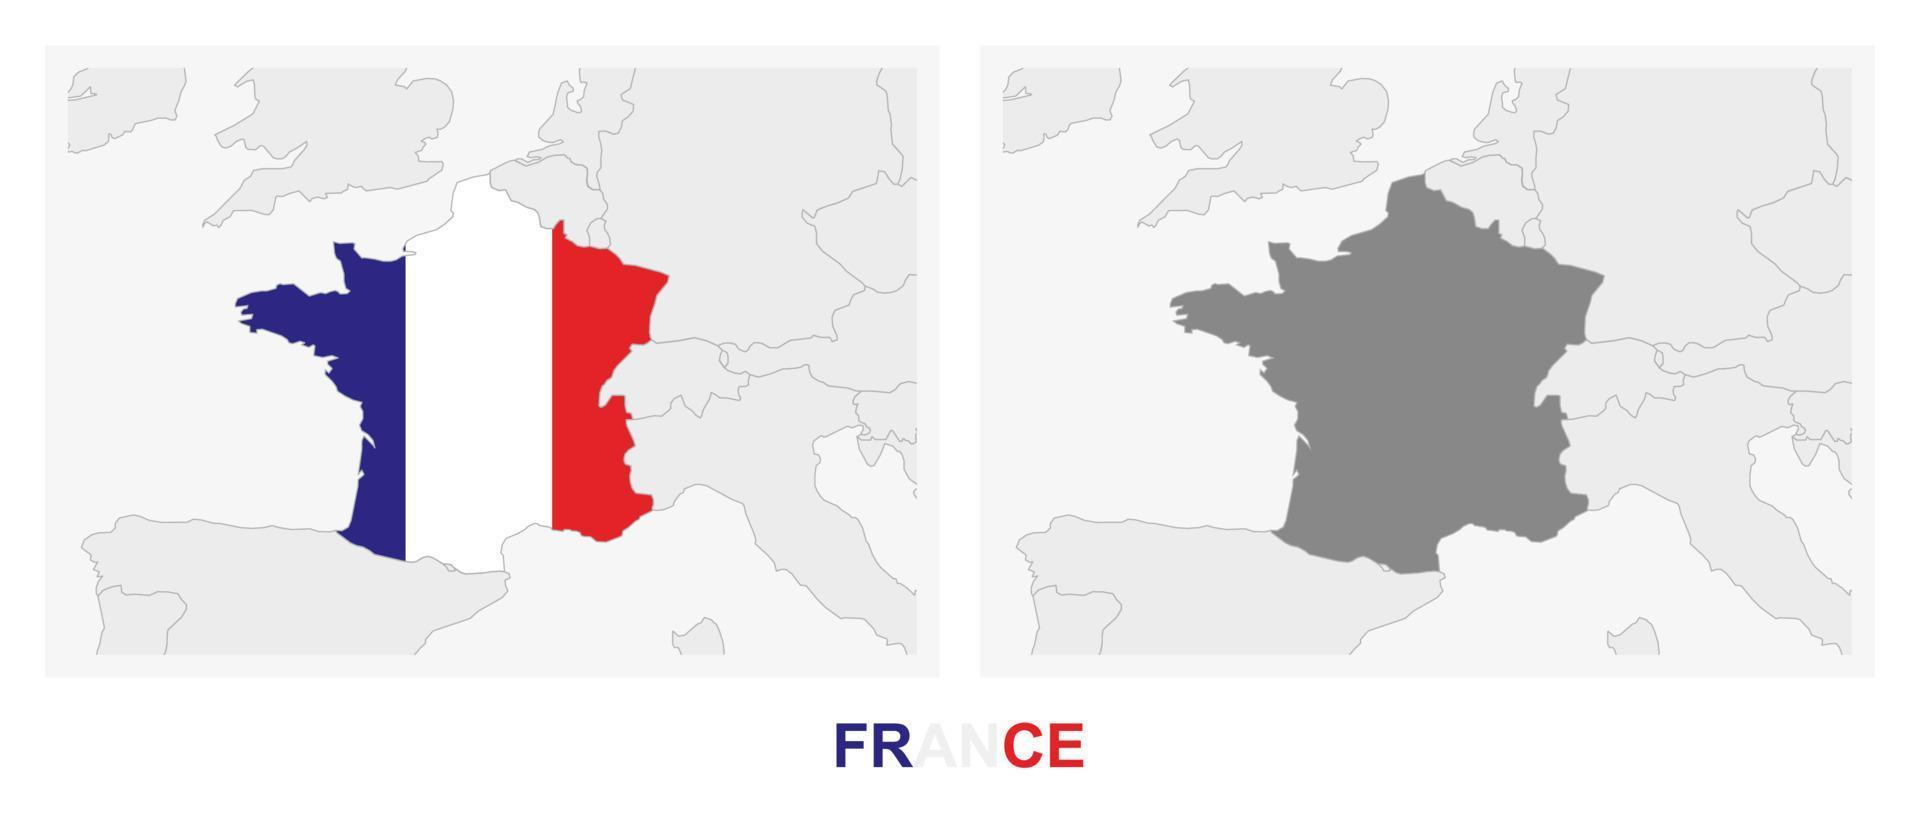 dos versiones del mapa de francia, con la bandera de francia y resaltada en gris oscuro. vector